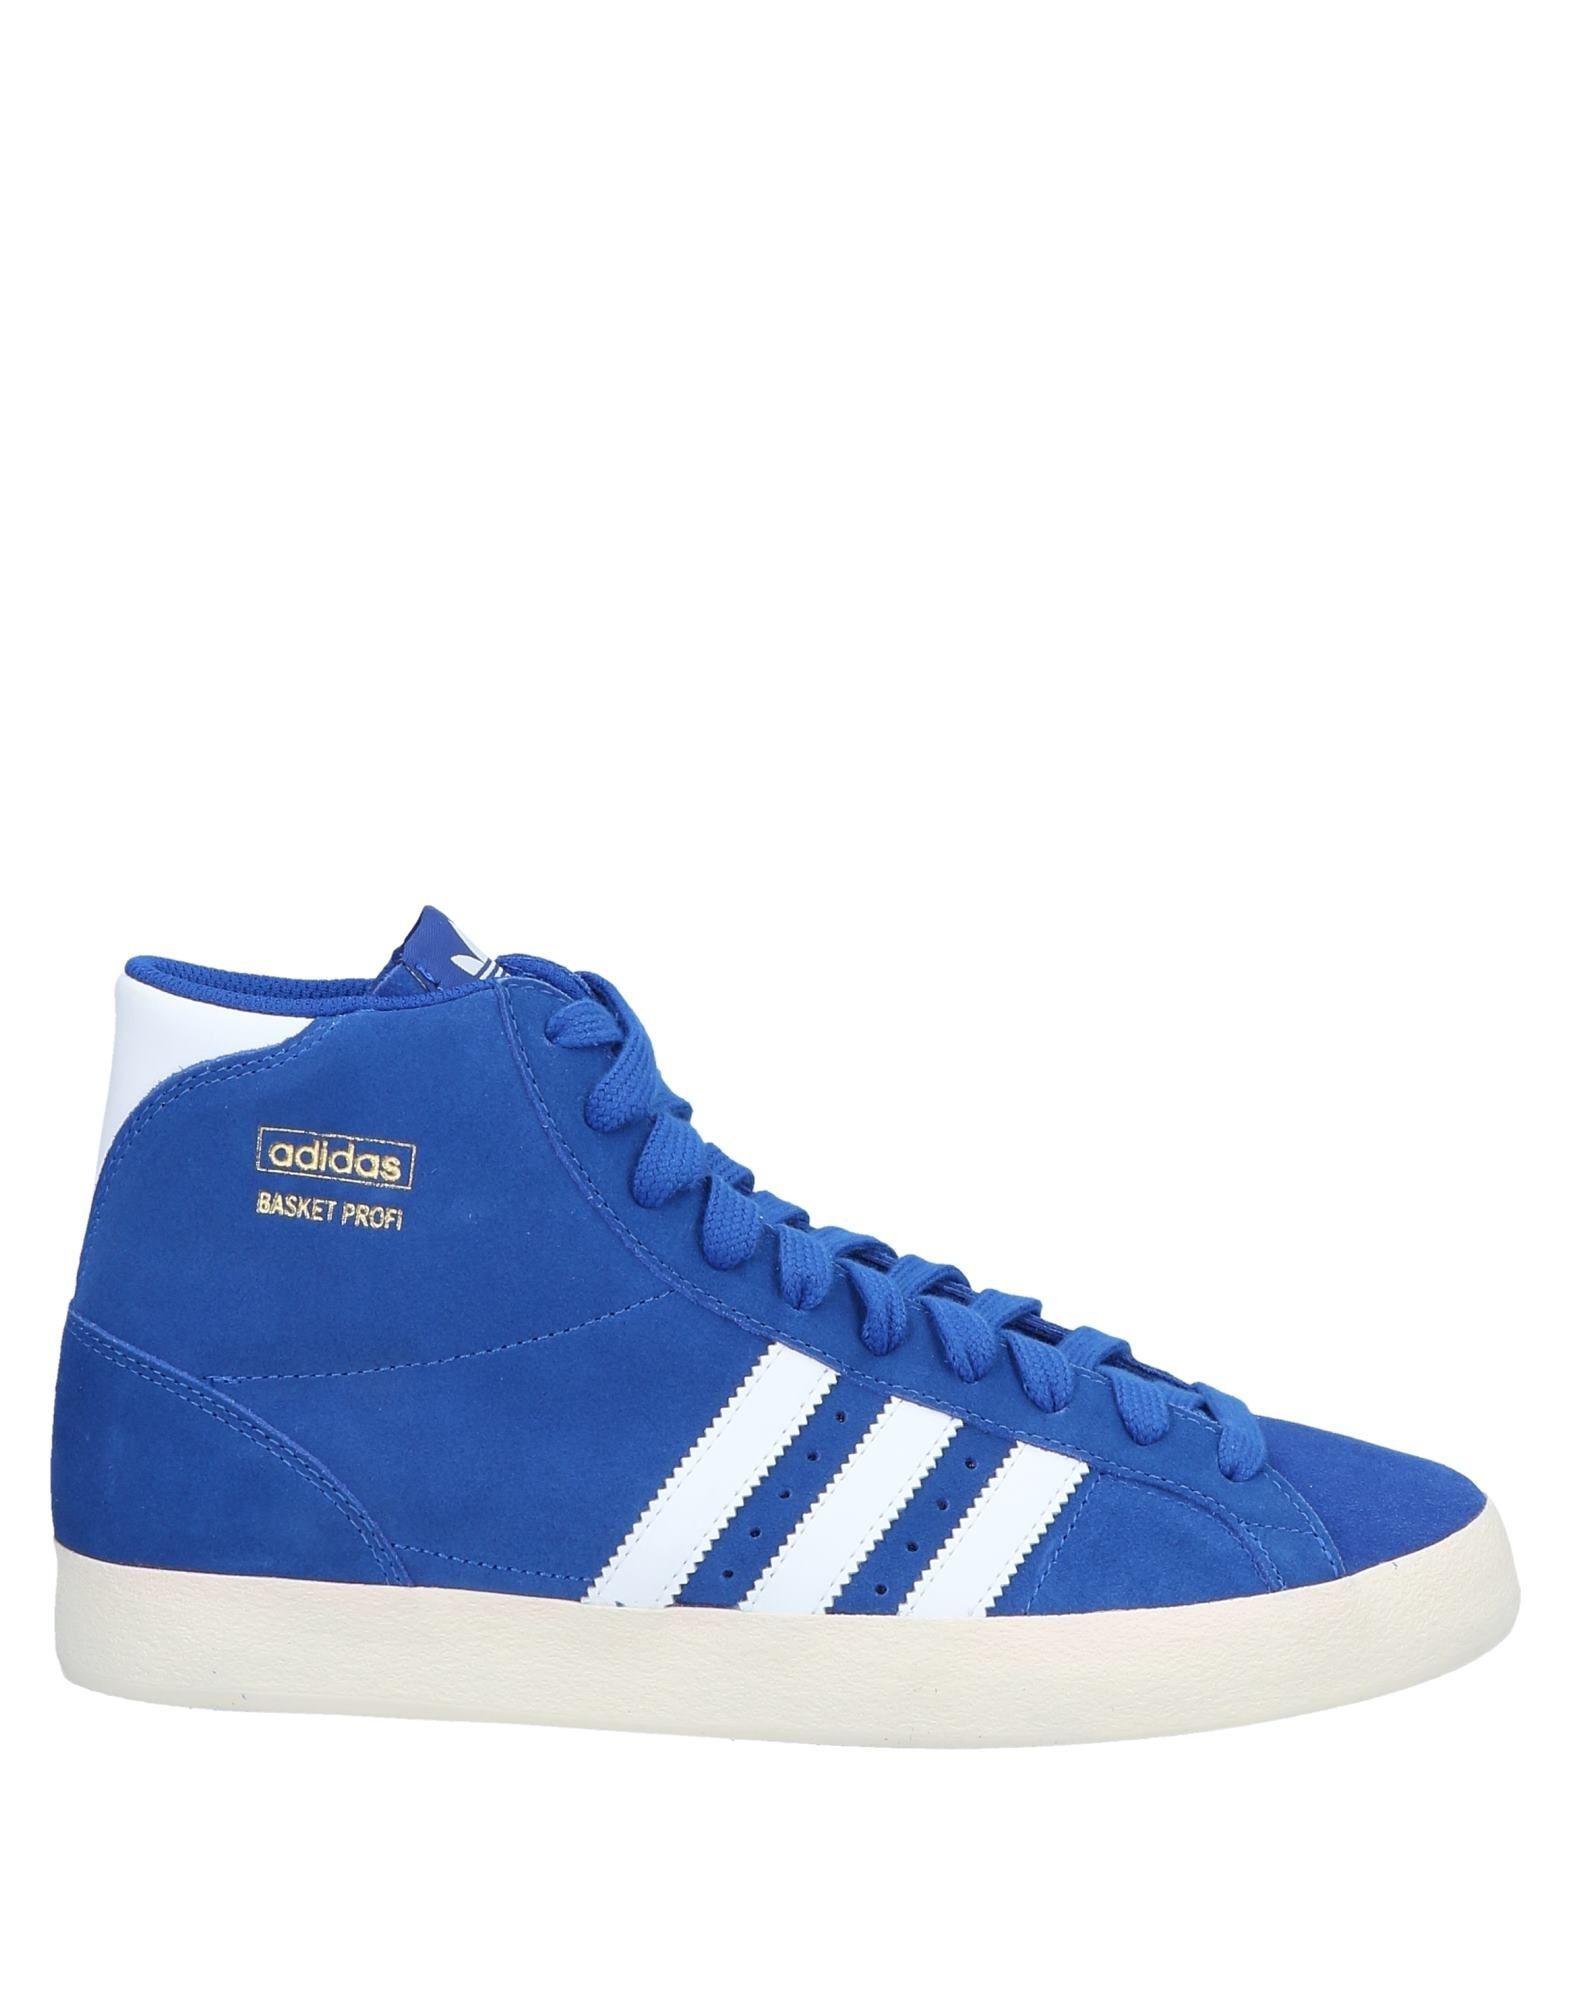 adidas originals Forum Low 84 Carolina Blue White/Blue Sneakers/Shoes GZ1893